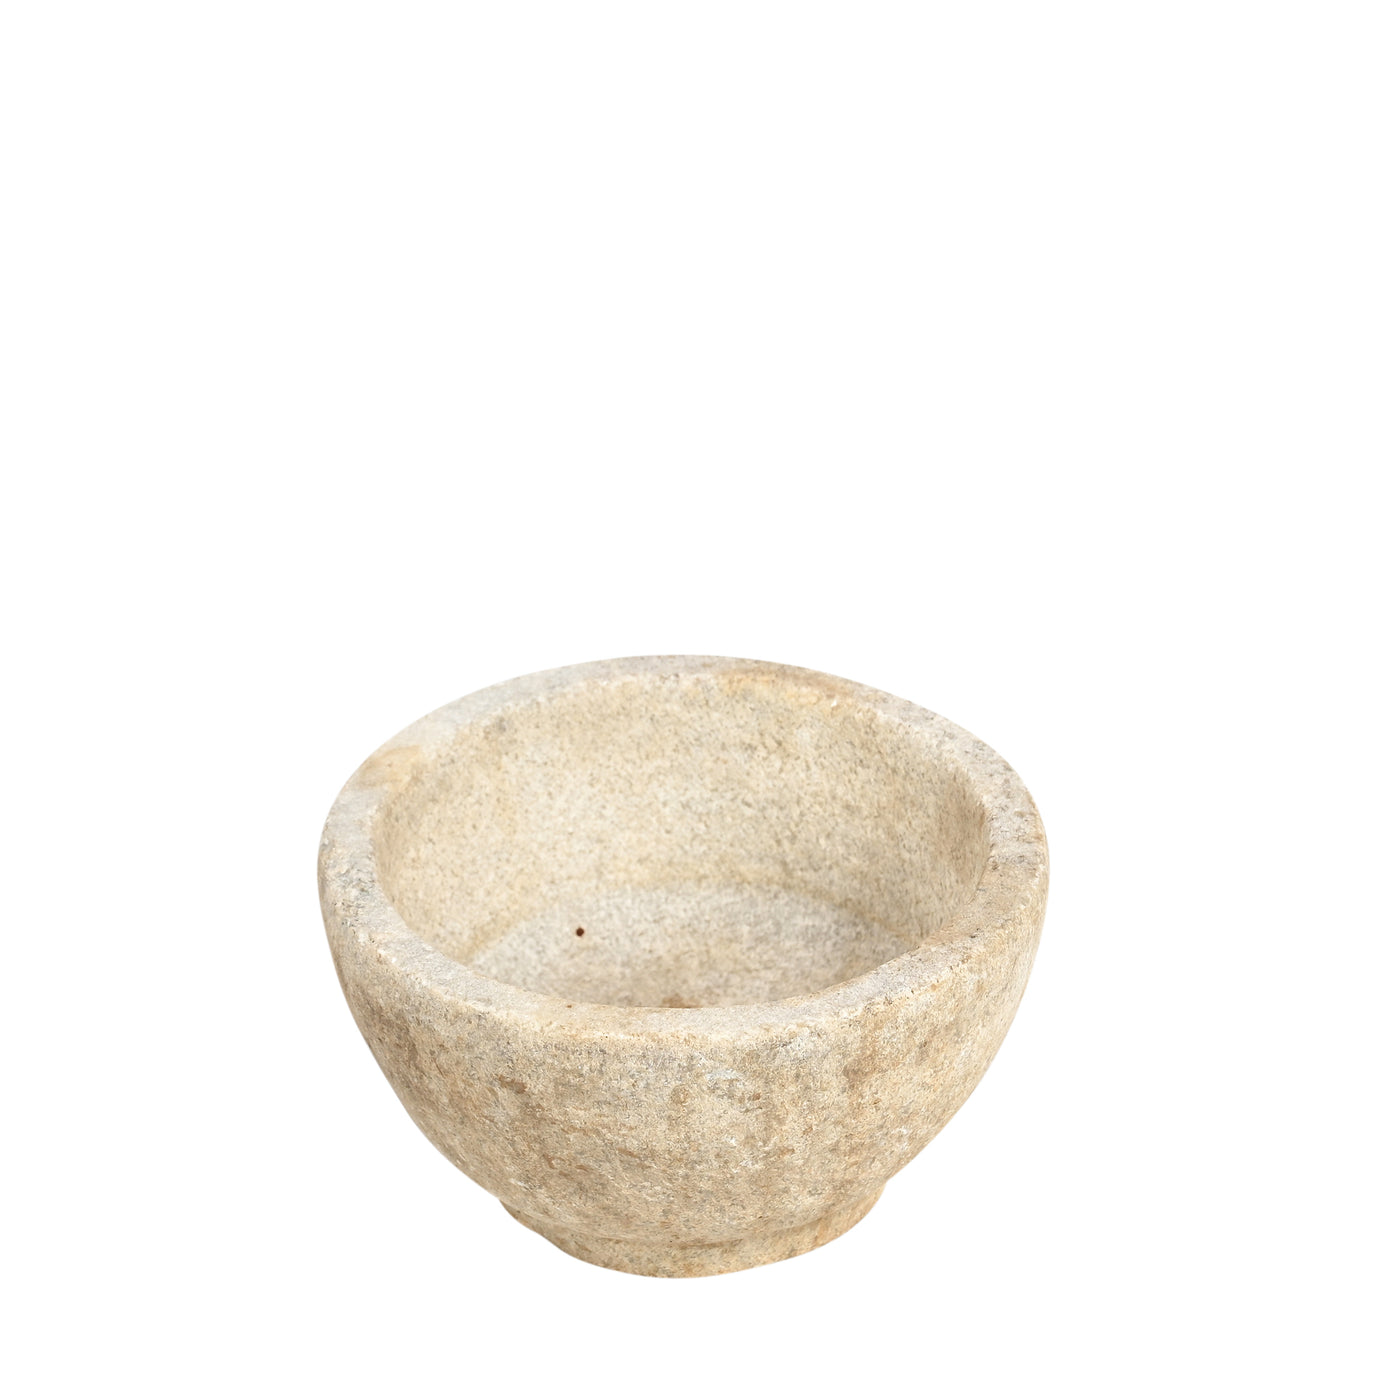 Devliya - Stone bowl n ° 3